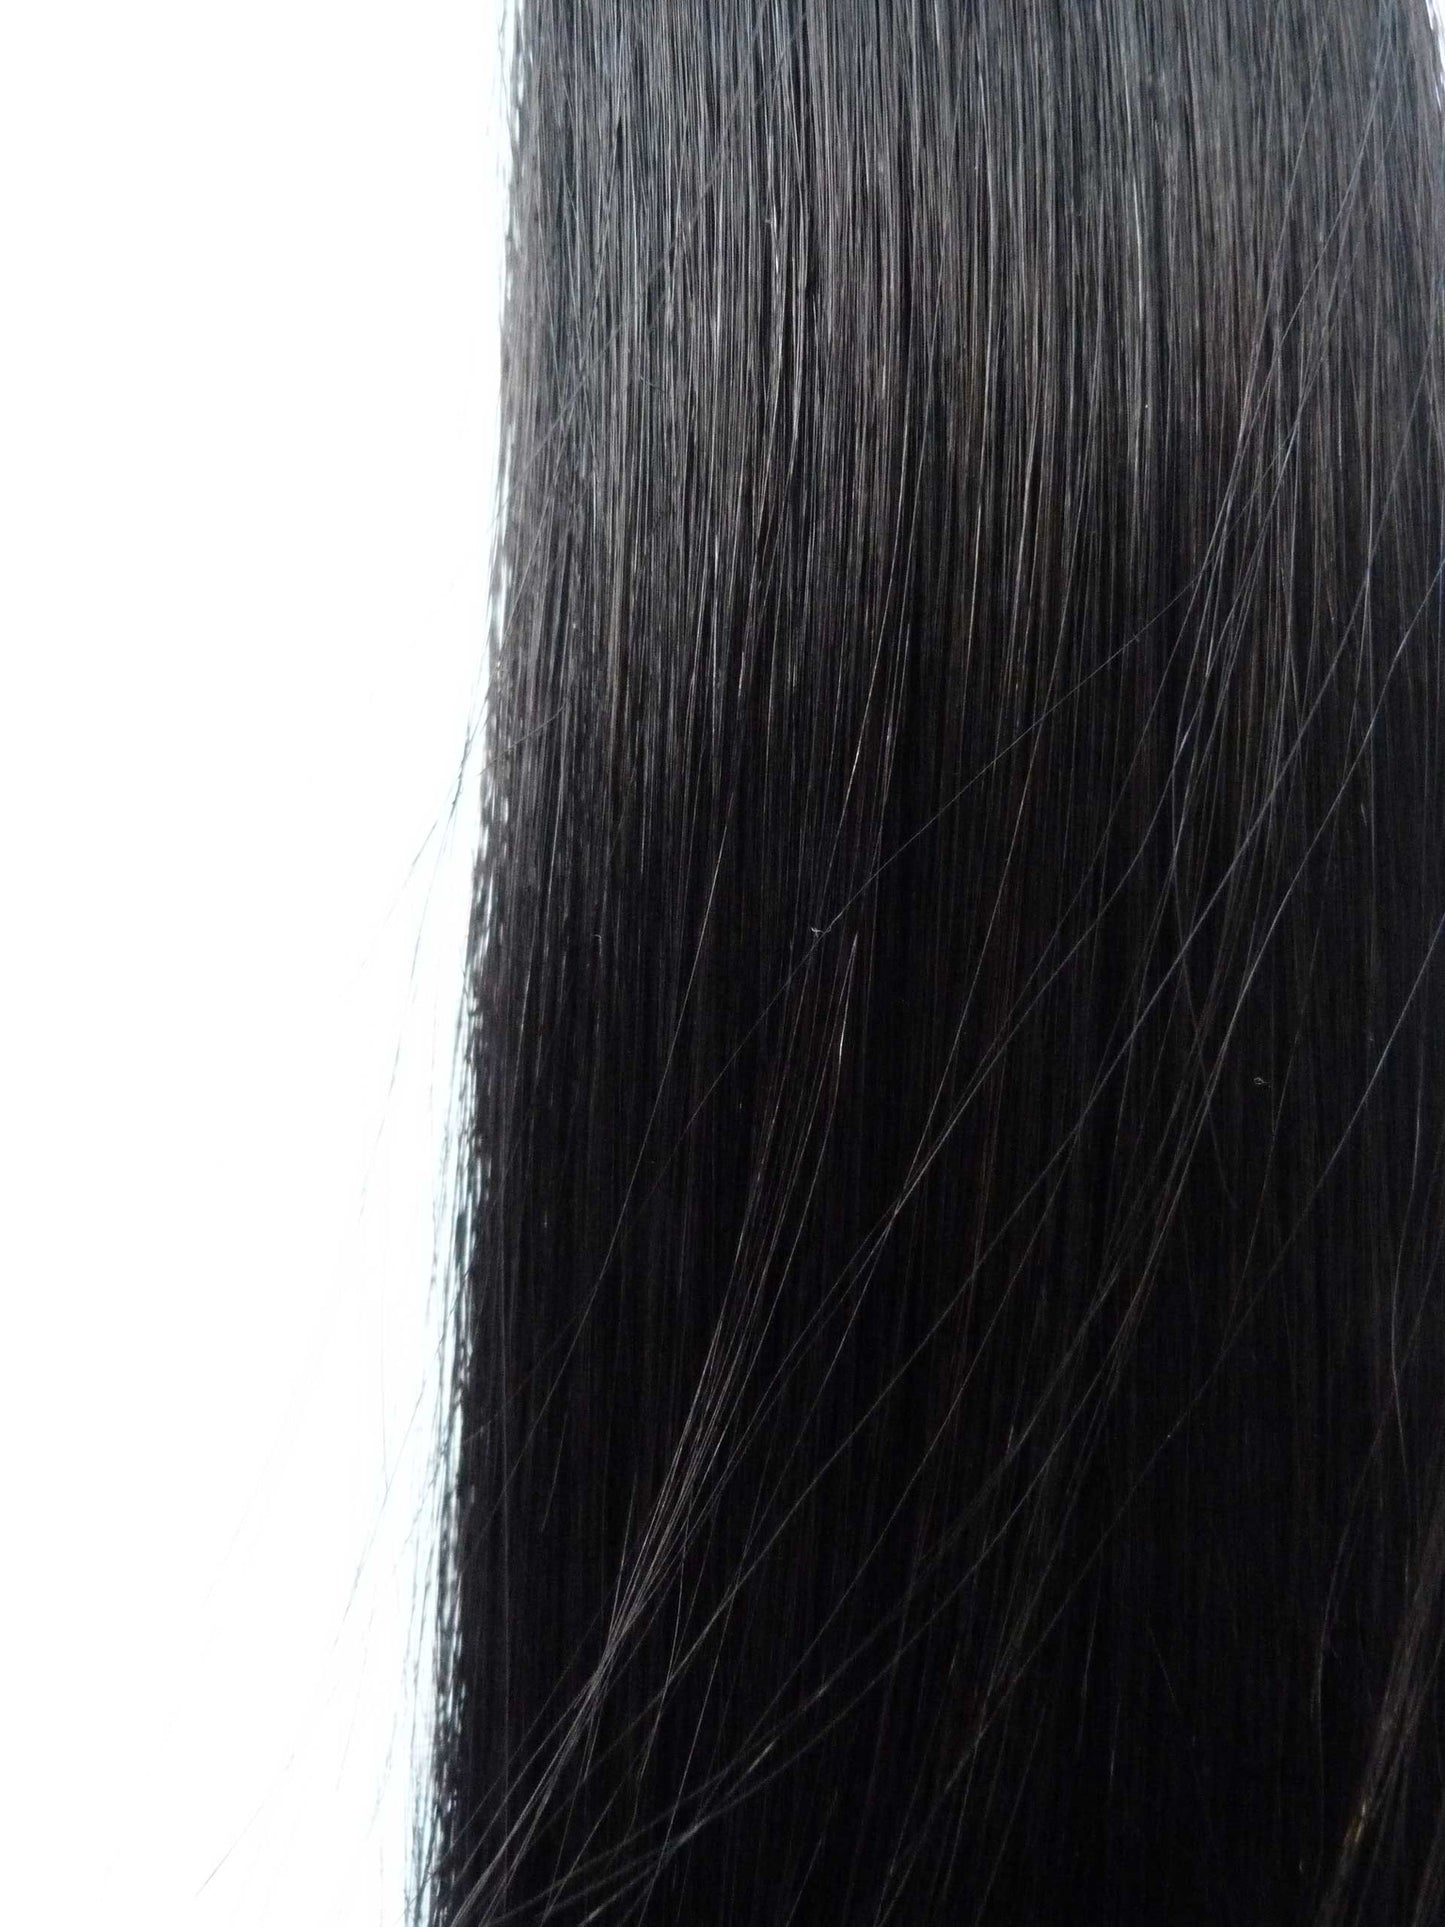 Extensions de cheveux humains vierges brésiliens - extensions à micro-boucles - cheveux vierges et beauté, les meilleures extensions de cheveux, de vrais cheveux humains vierges.